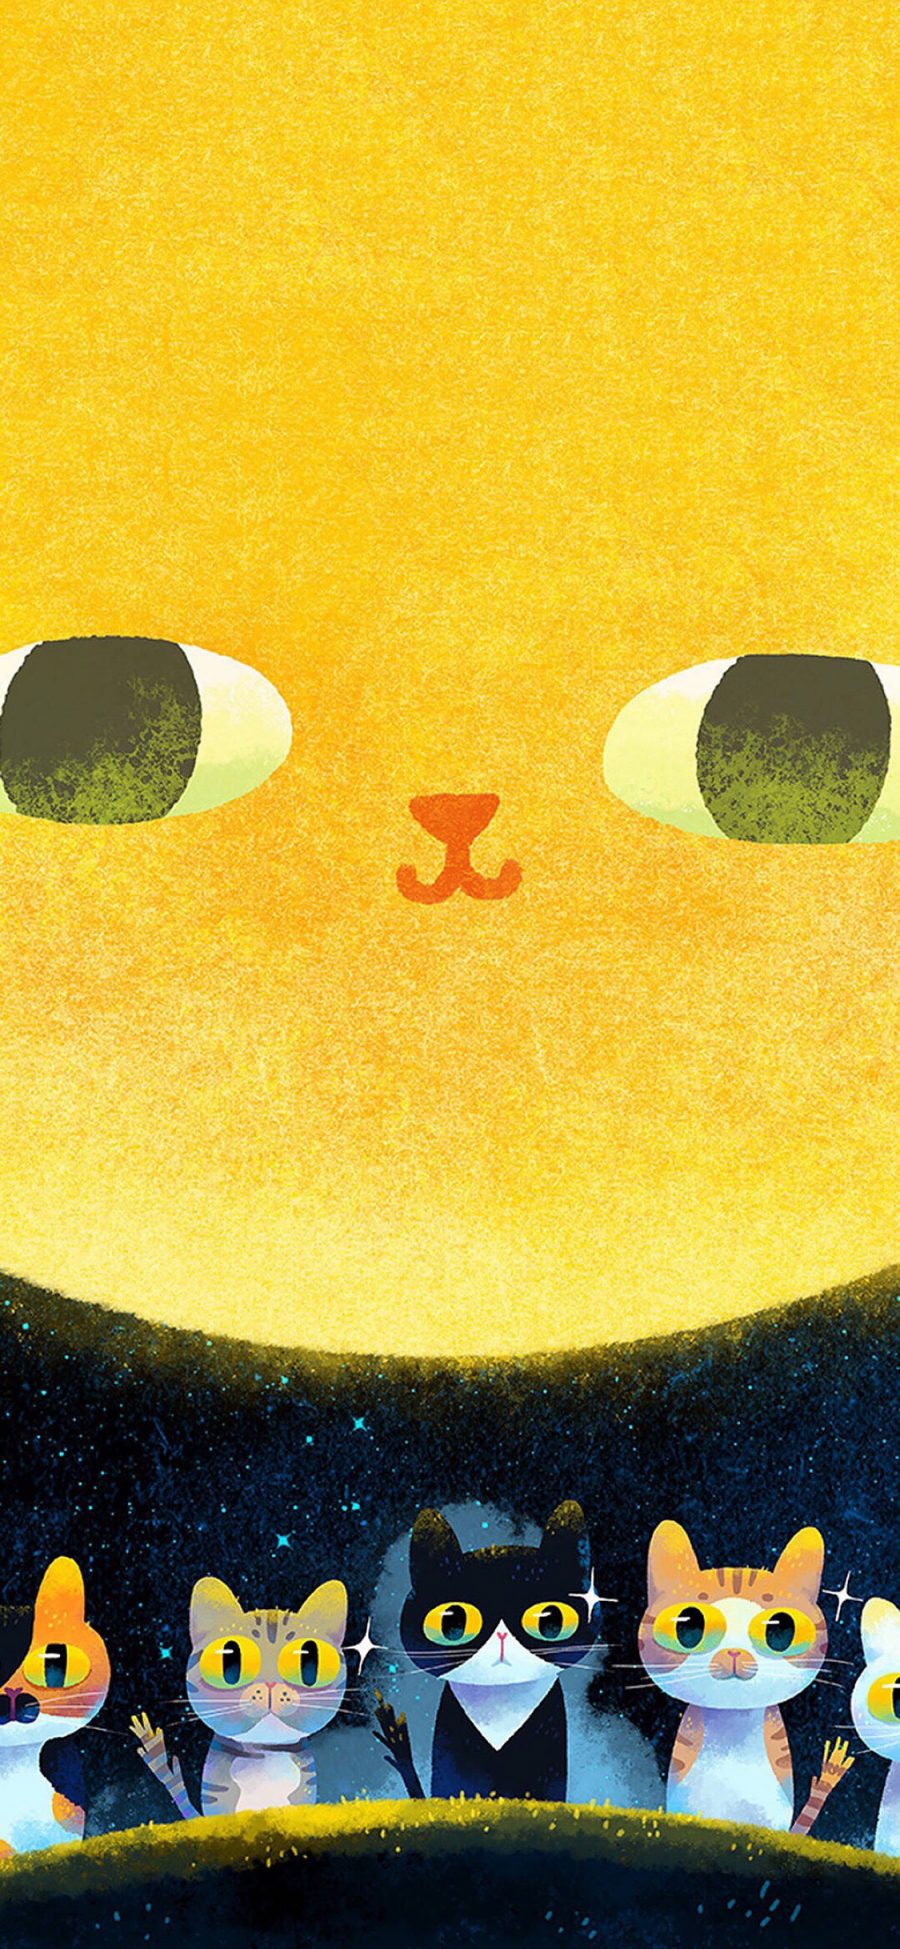 [2436×1125]插画 猫咪 可爱 色彩 苹果手机动漫壁纸图片